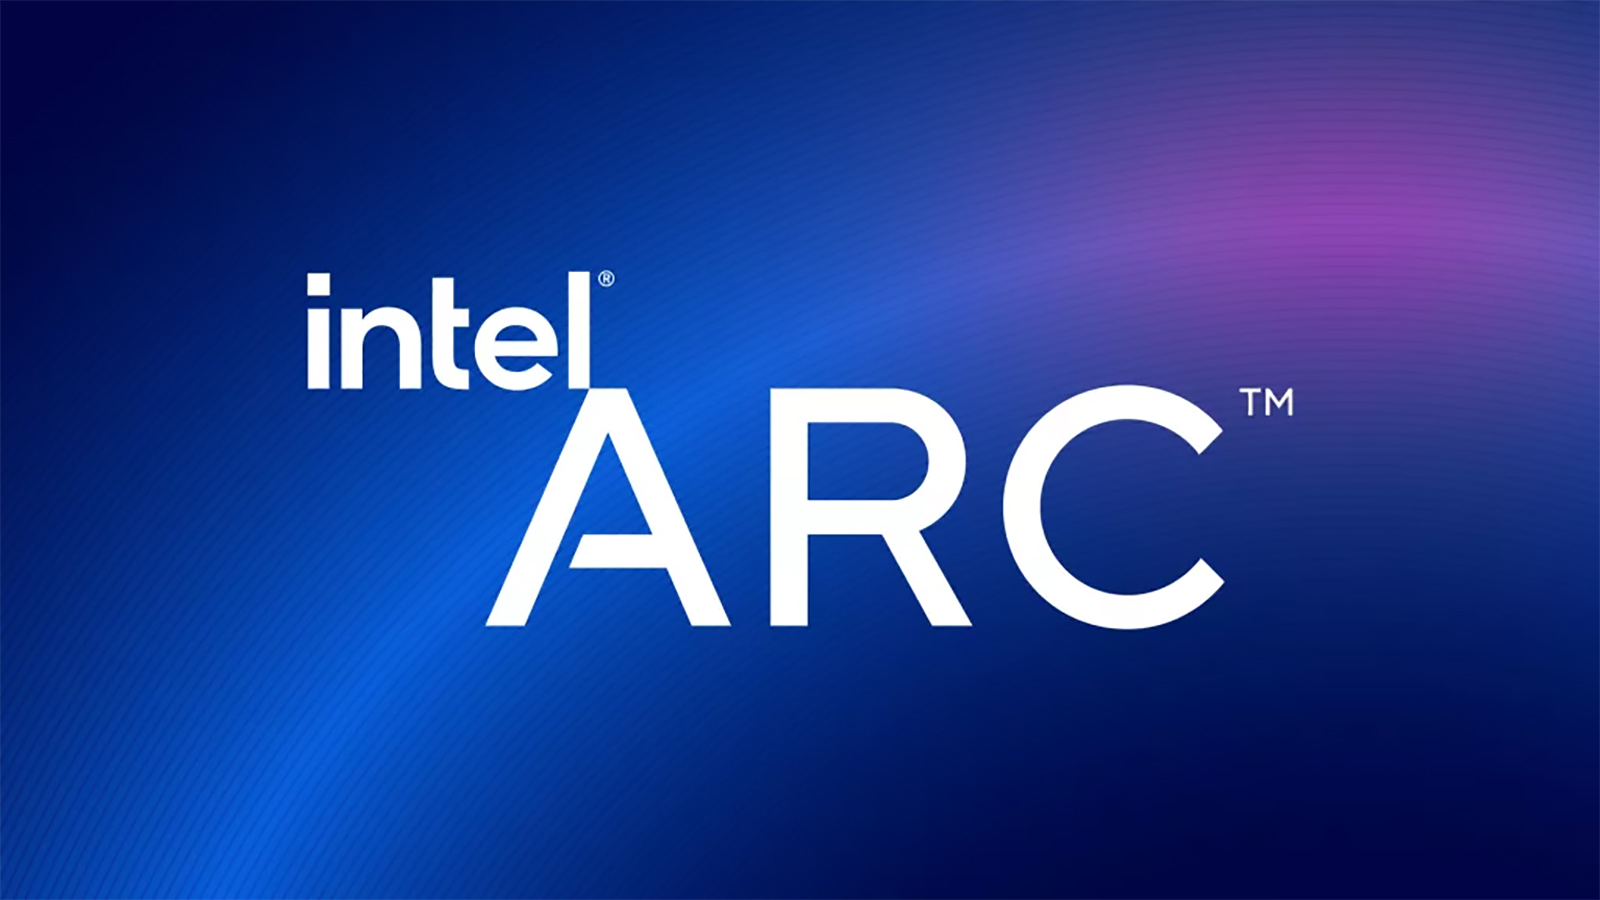 インテルは間もなく新しい Line of Arc ラップトップ GPU を発表します